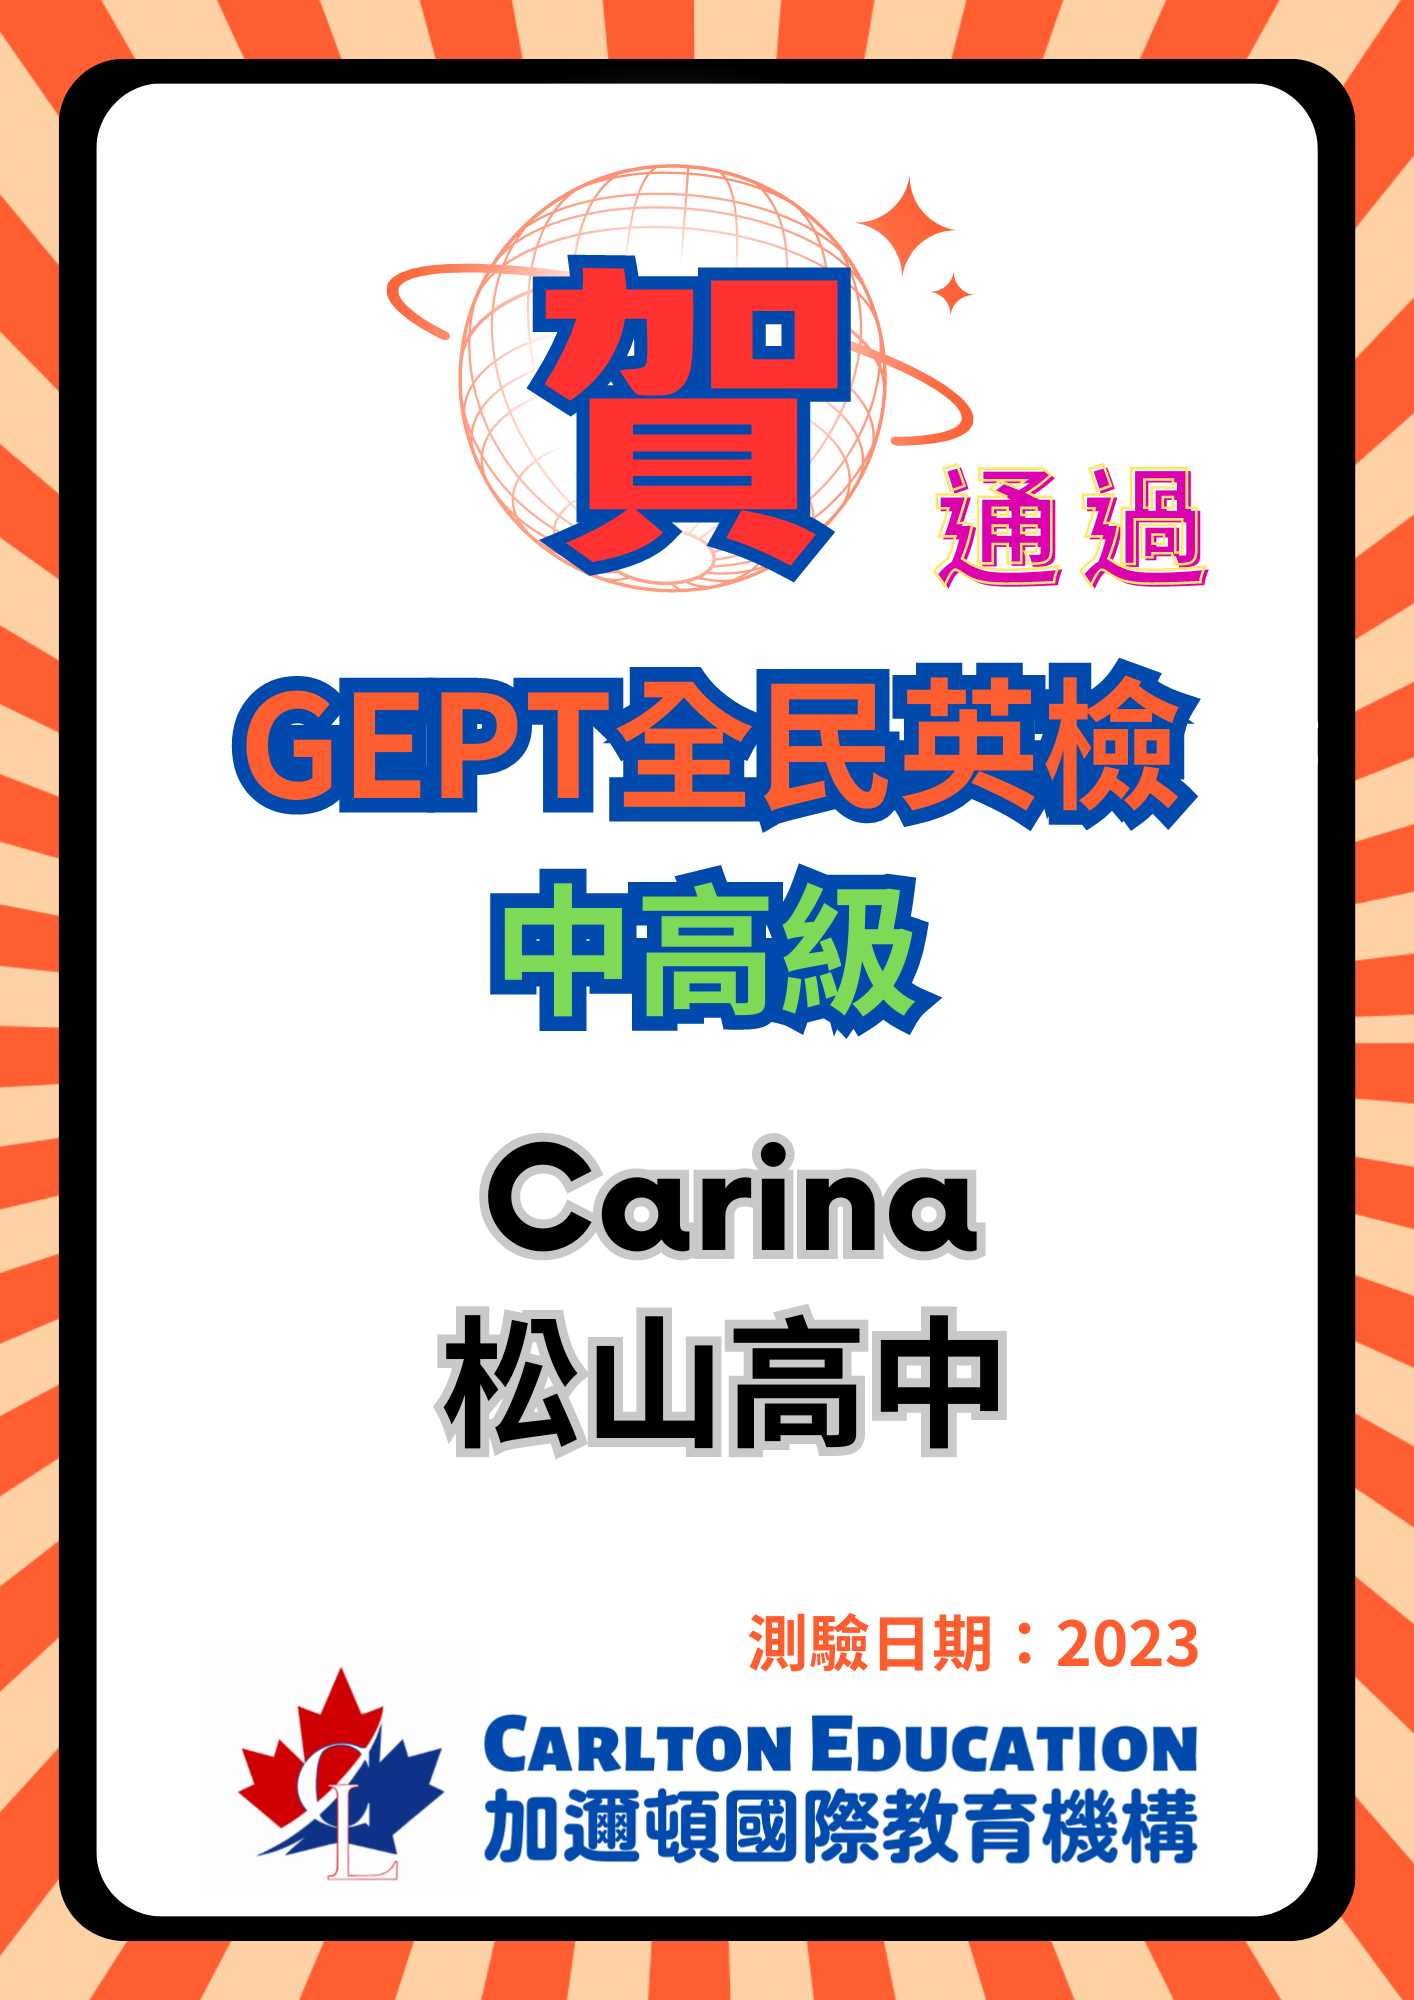 2023恭喜 Carina 通過全民英檢GEPT中高級